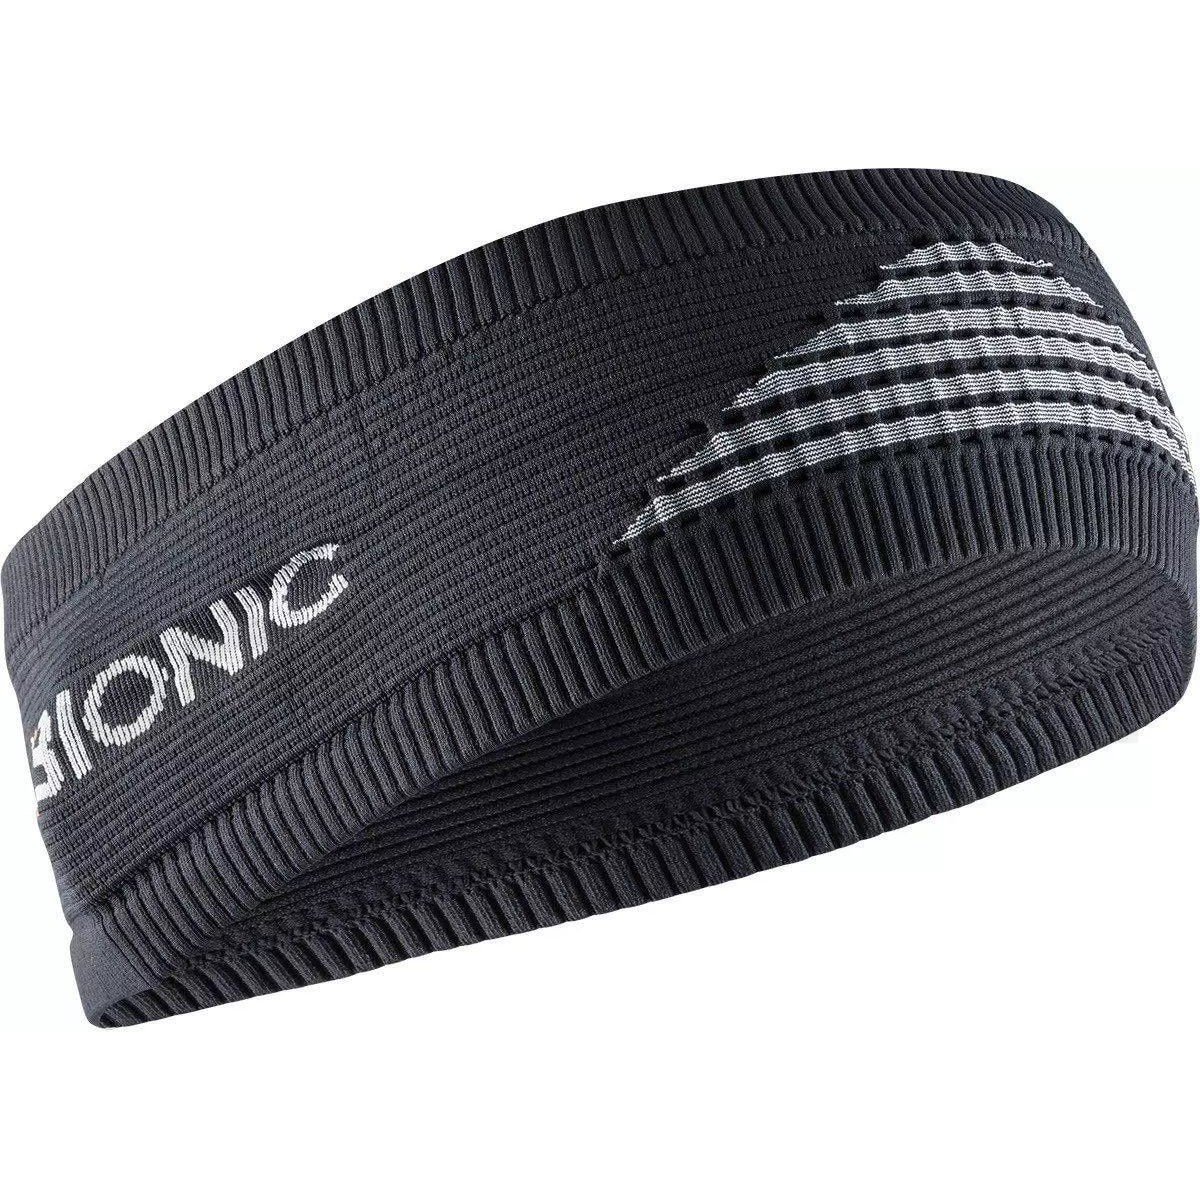 Čelenka X-Bionic Headband 4.0 - černá/šedá